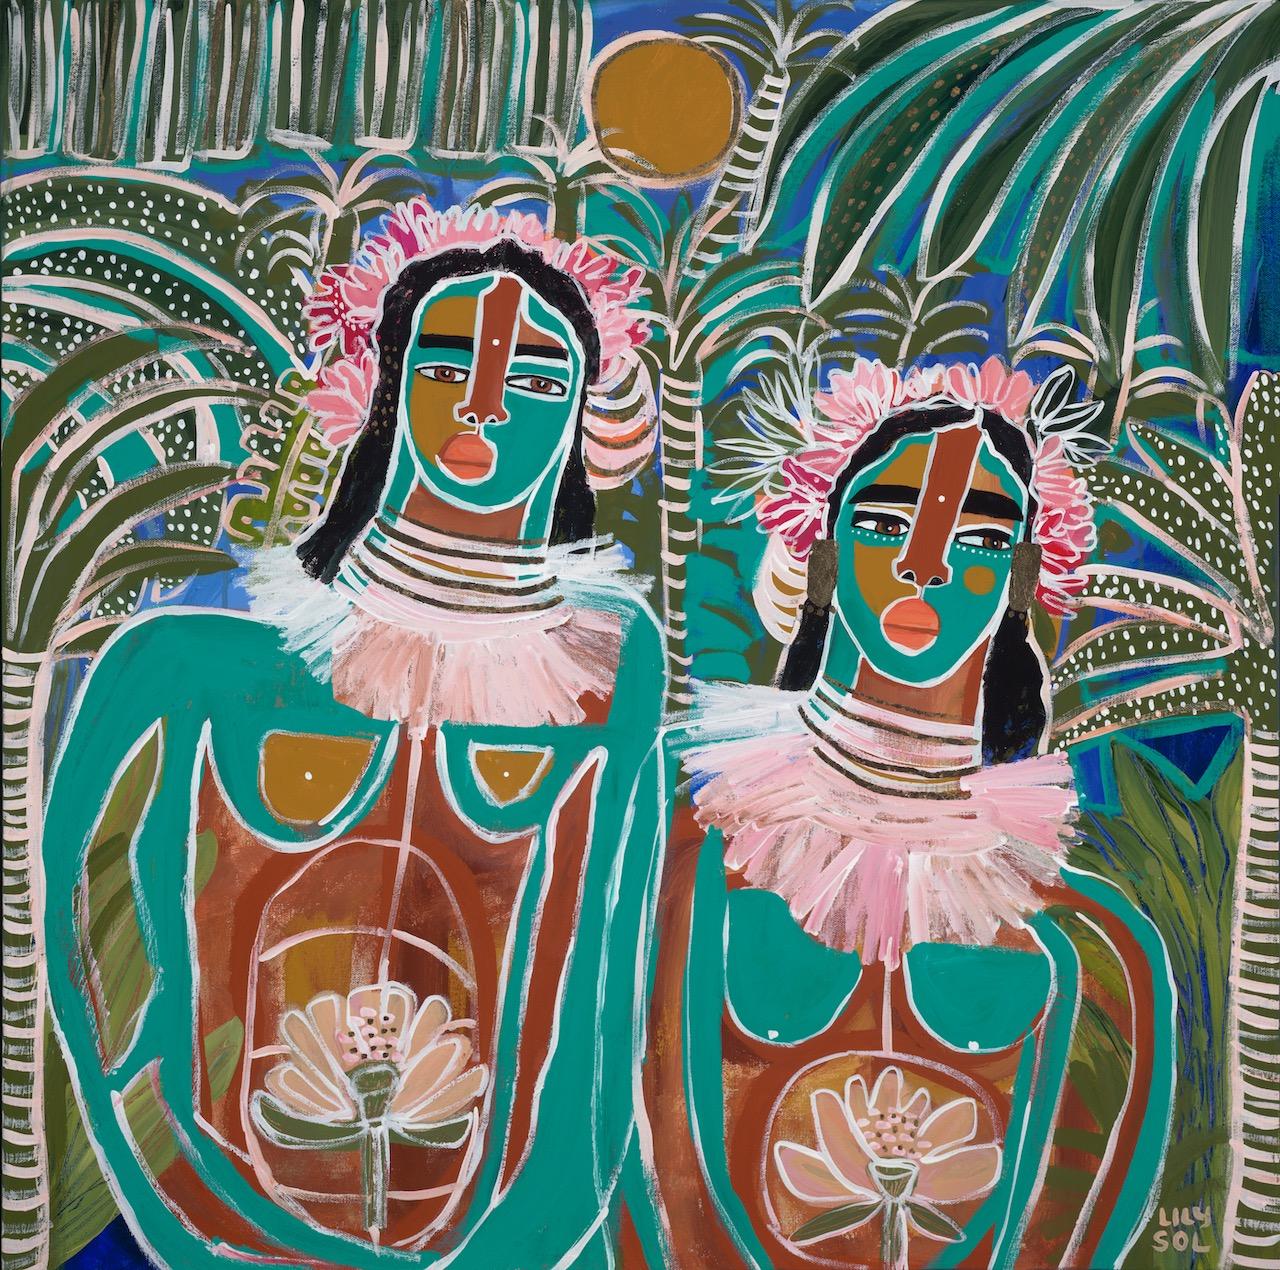 Figurative Painting Lily Sol - "Blooming Together" peinture à l'huile contemporaine de femmes à la peau peinte en sarcelle.